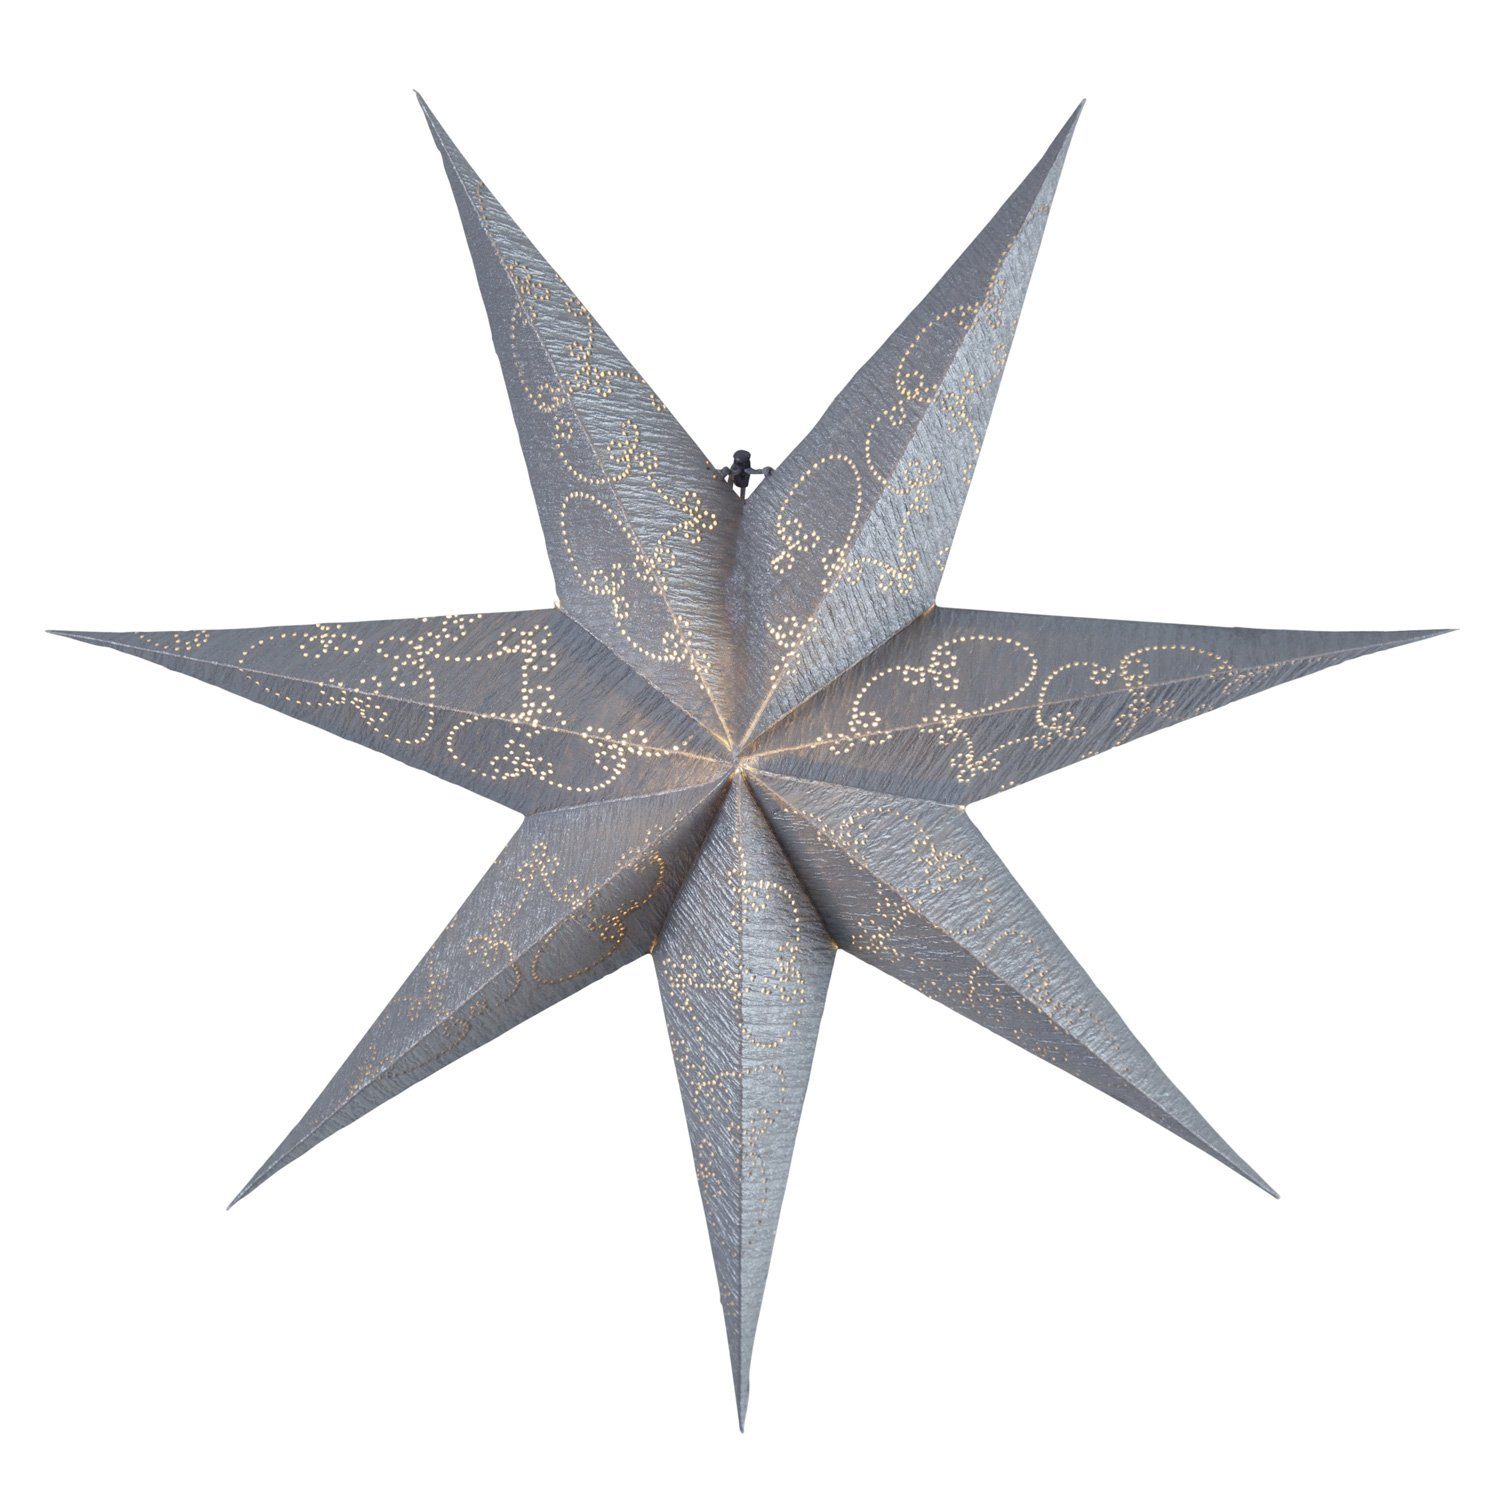 TRADING Papierstern D: silber Leuchtstern Stern Decorus Weihnachtsstern 63cm LED STAR hängend